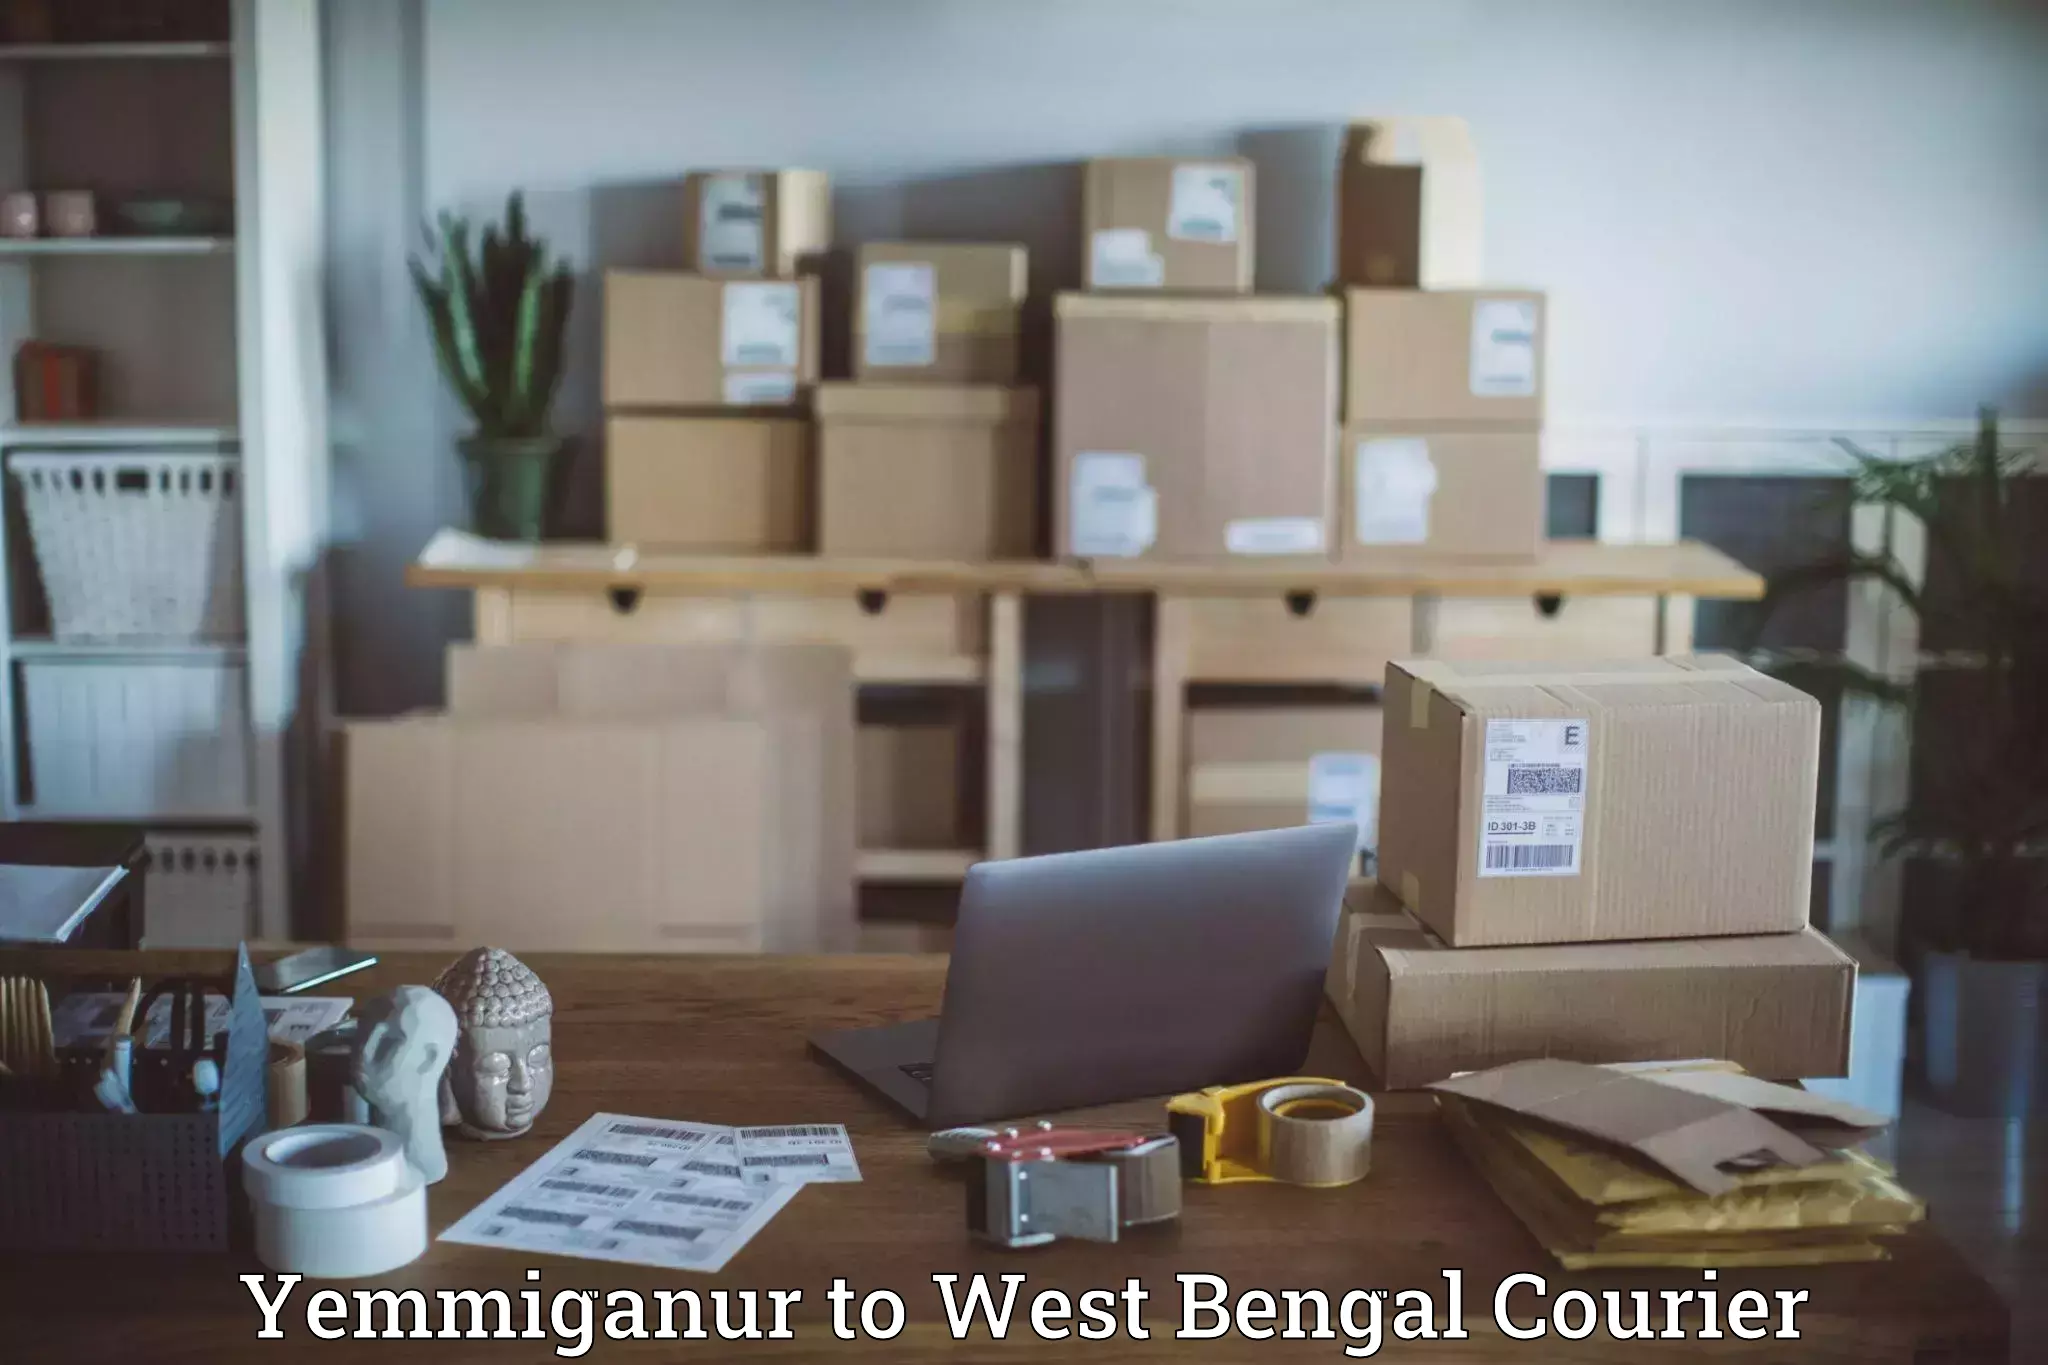 Next-generation courier services Yemmiganur to Bishnupur